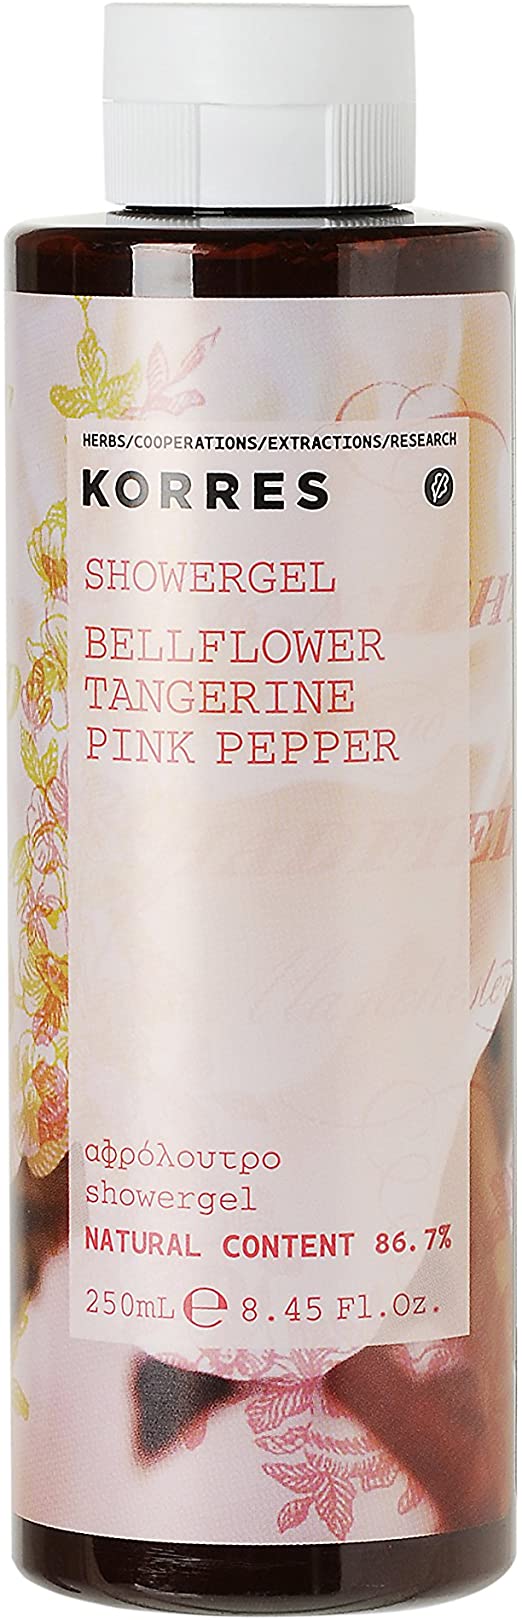 KORRES for Her Bellflower, Tangerine and Pink Pepper Showergel 250 ml